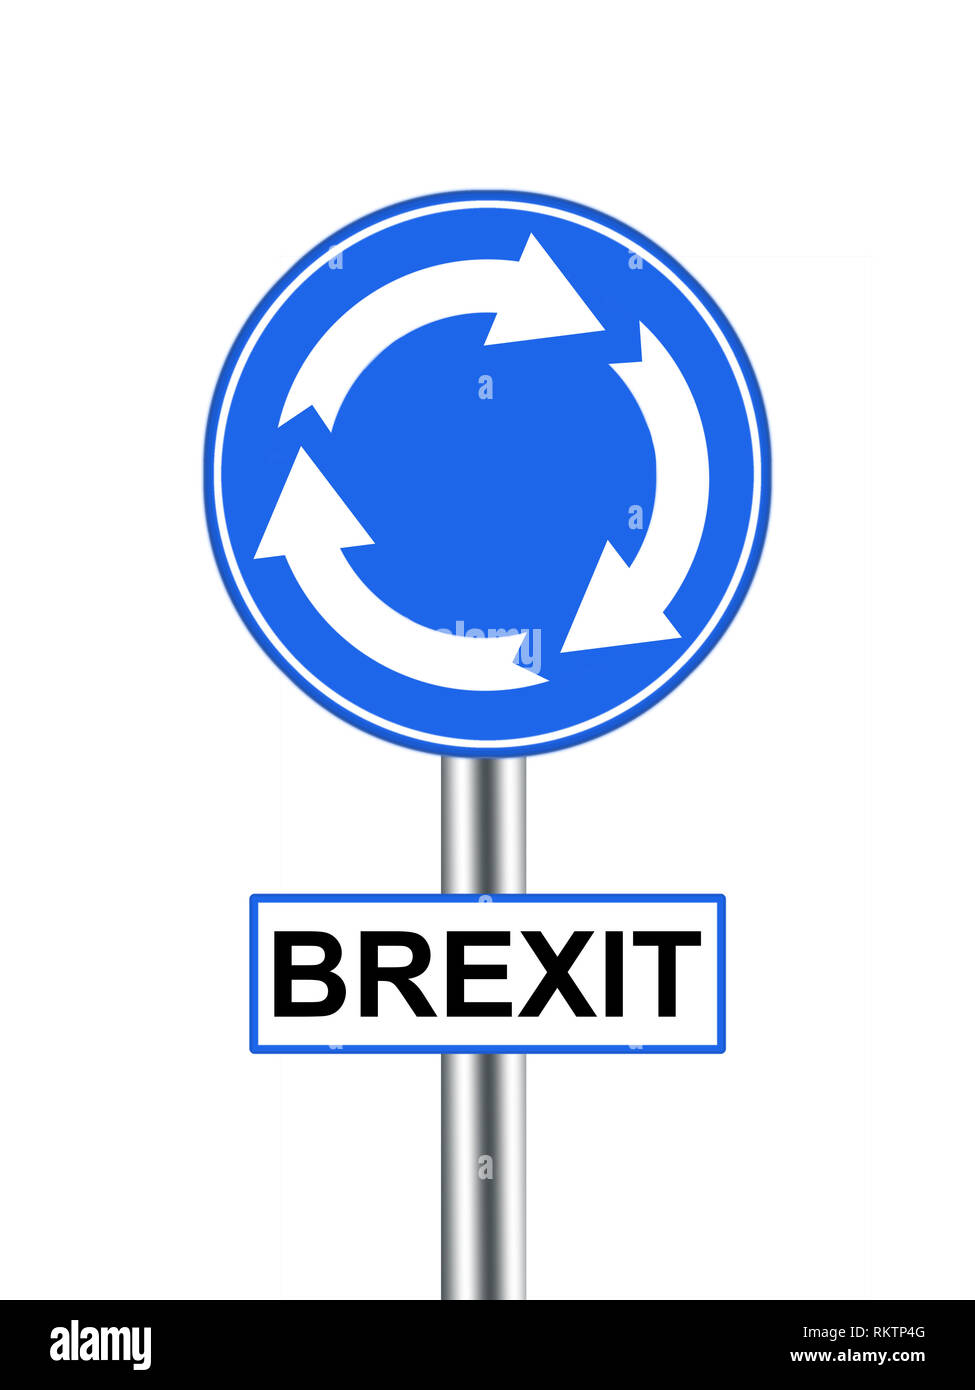 Brexit panneau routier rond-point. La politique britannique de l'UE re quitter l'Union européenne. Isolé sur blanc. Banque D'Images